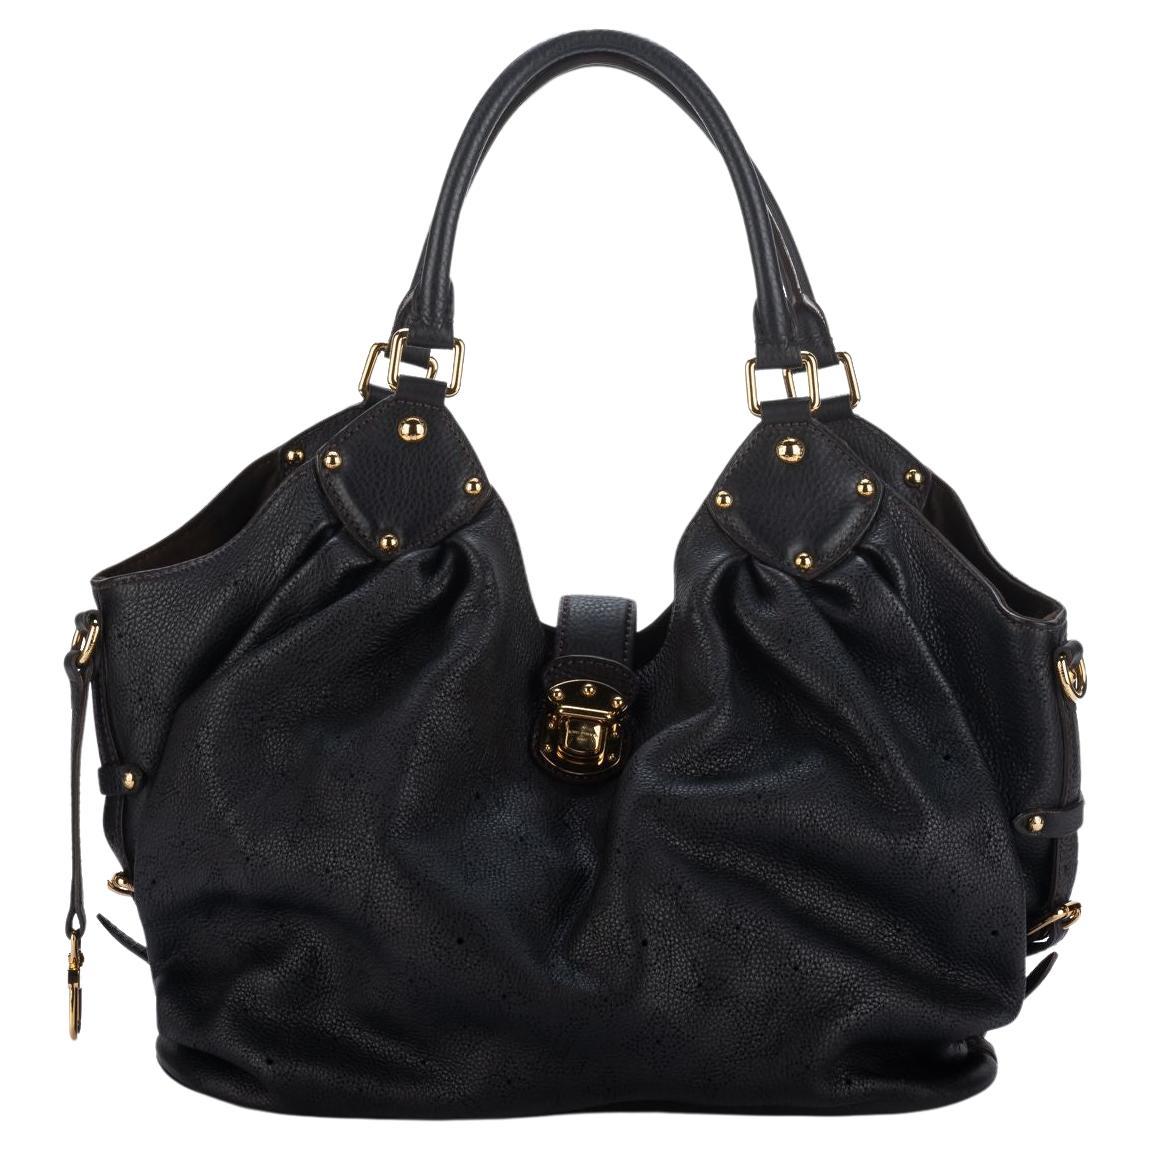 Louis Vuitton Black Mahina Large Bag Preloved